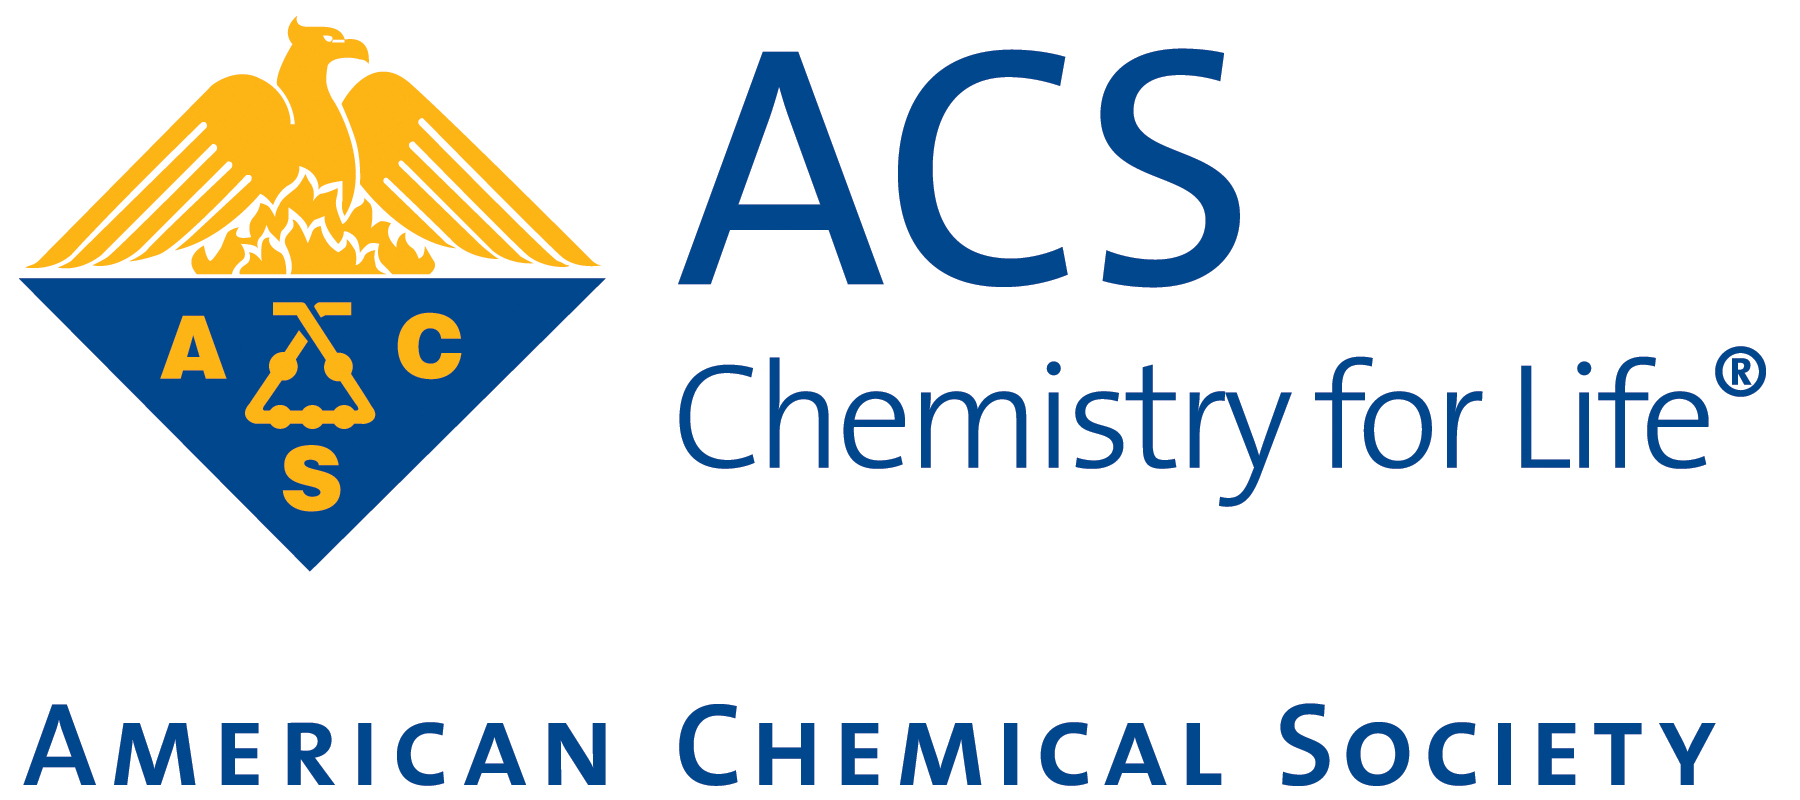 اکانت رایگان برای دسرسی به American Chemical Society